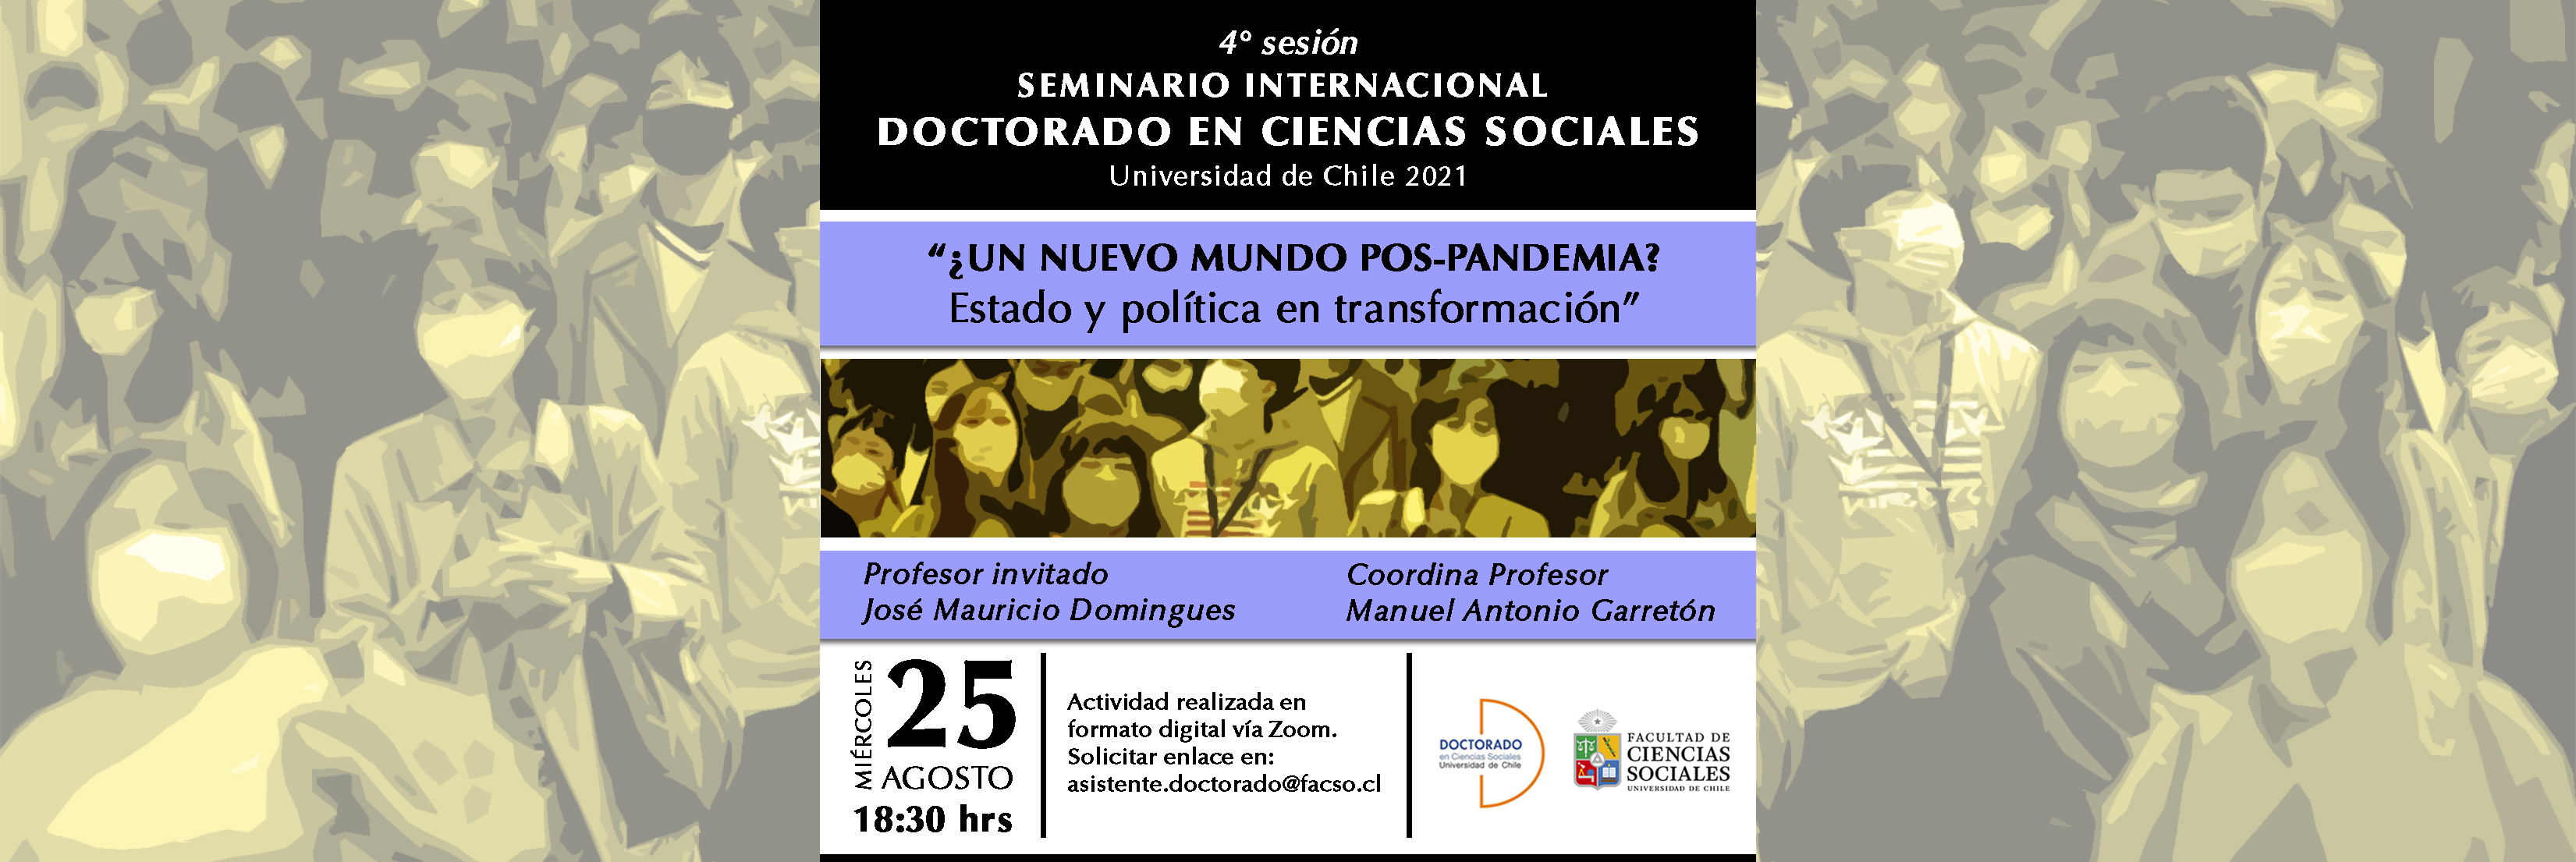 Cuarta sesión del seminario Internacional del Doctorado en Ciencias Sociales 2021